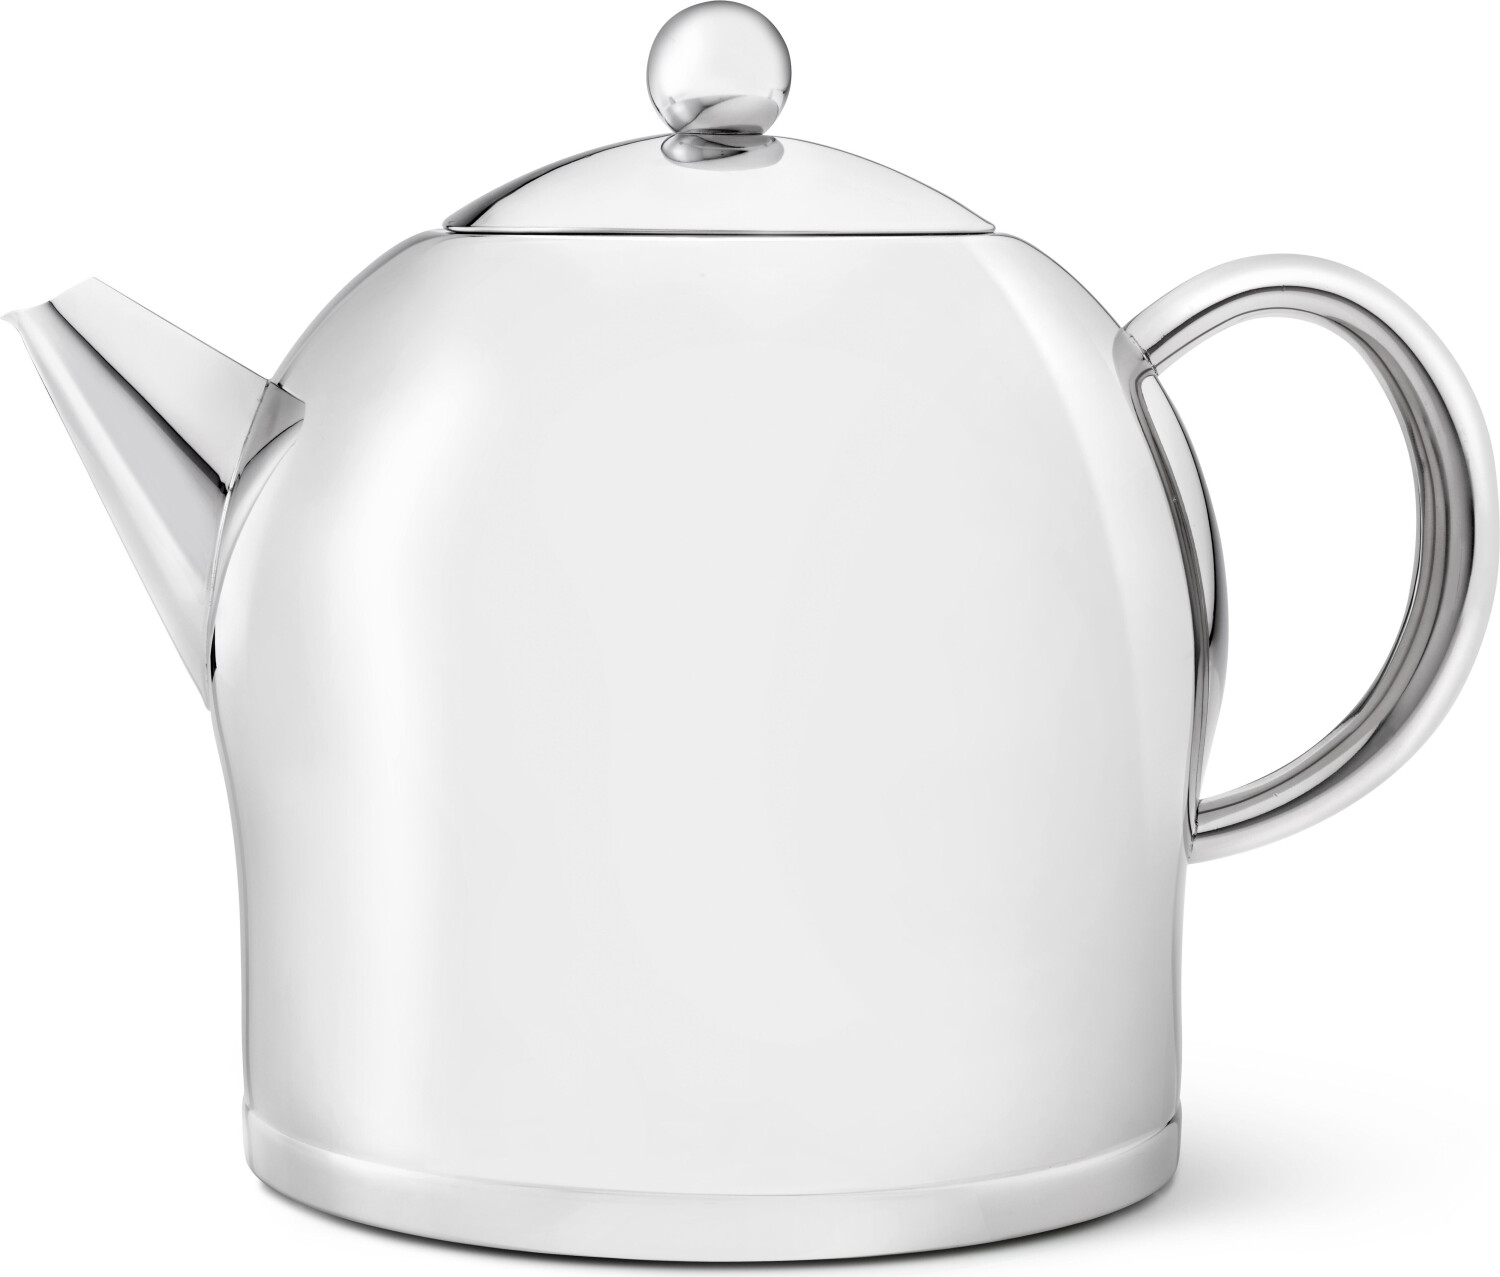 Bredemeijer Teekanne Santhee 2,0 l glänzend ab € 85,46 | Preisvergleich bei